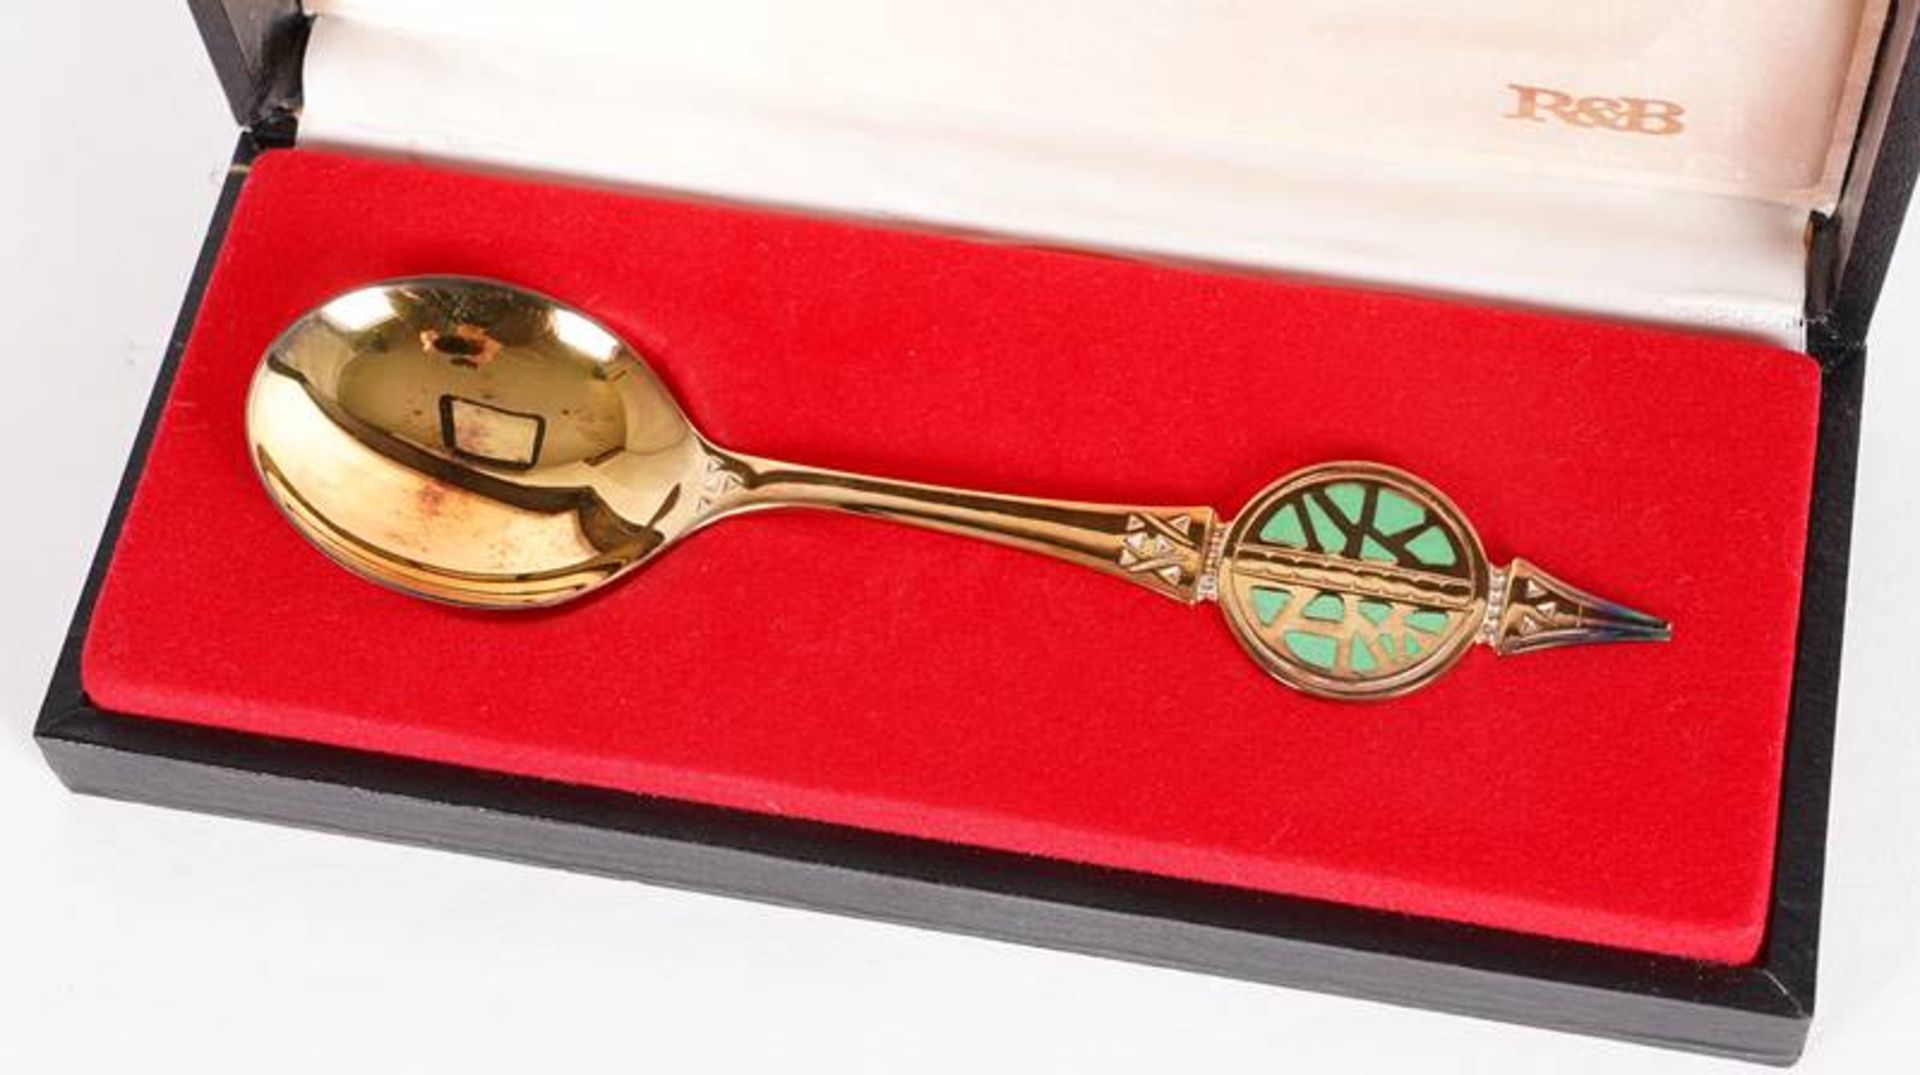 Annual spoon